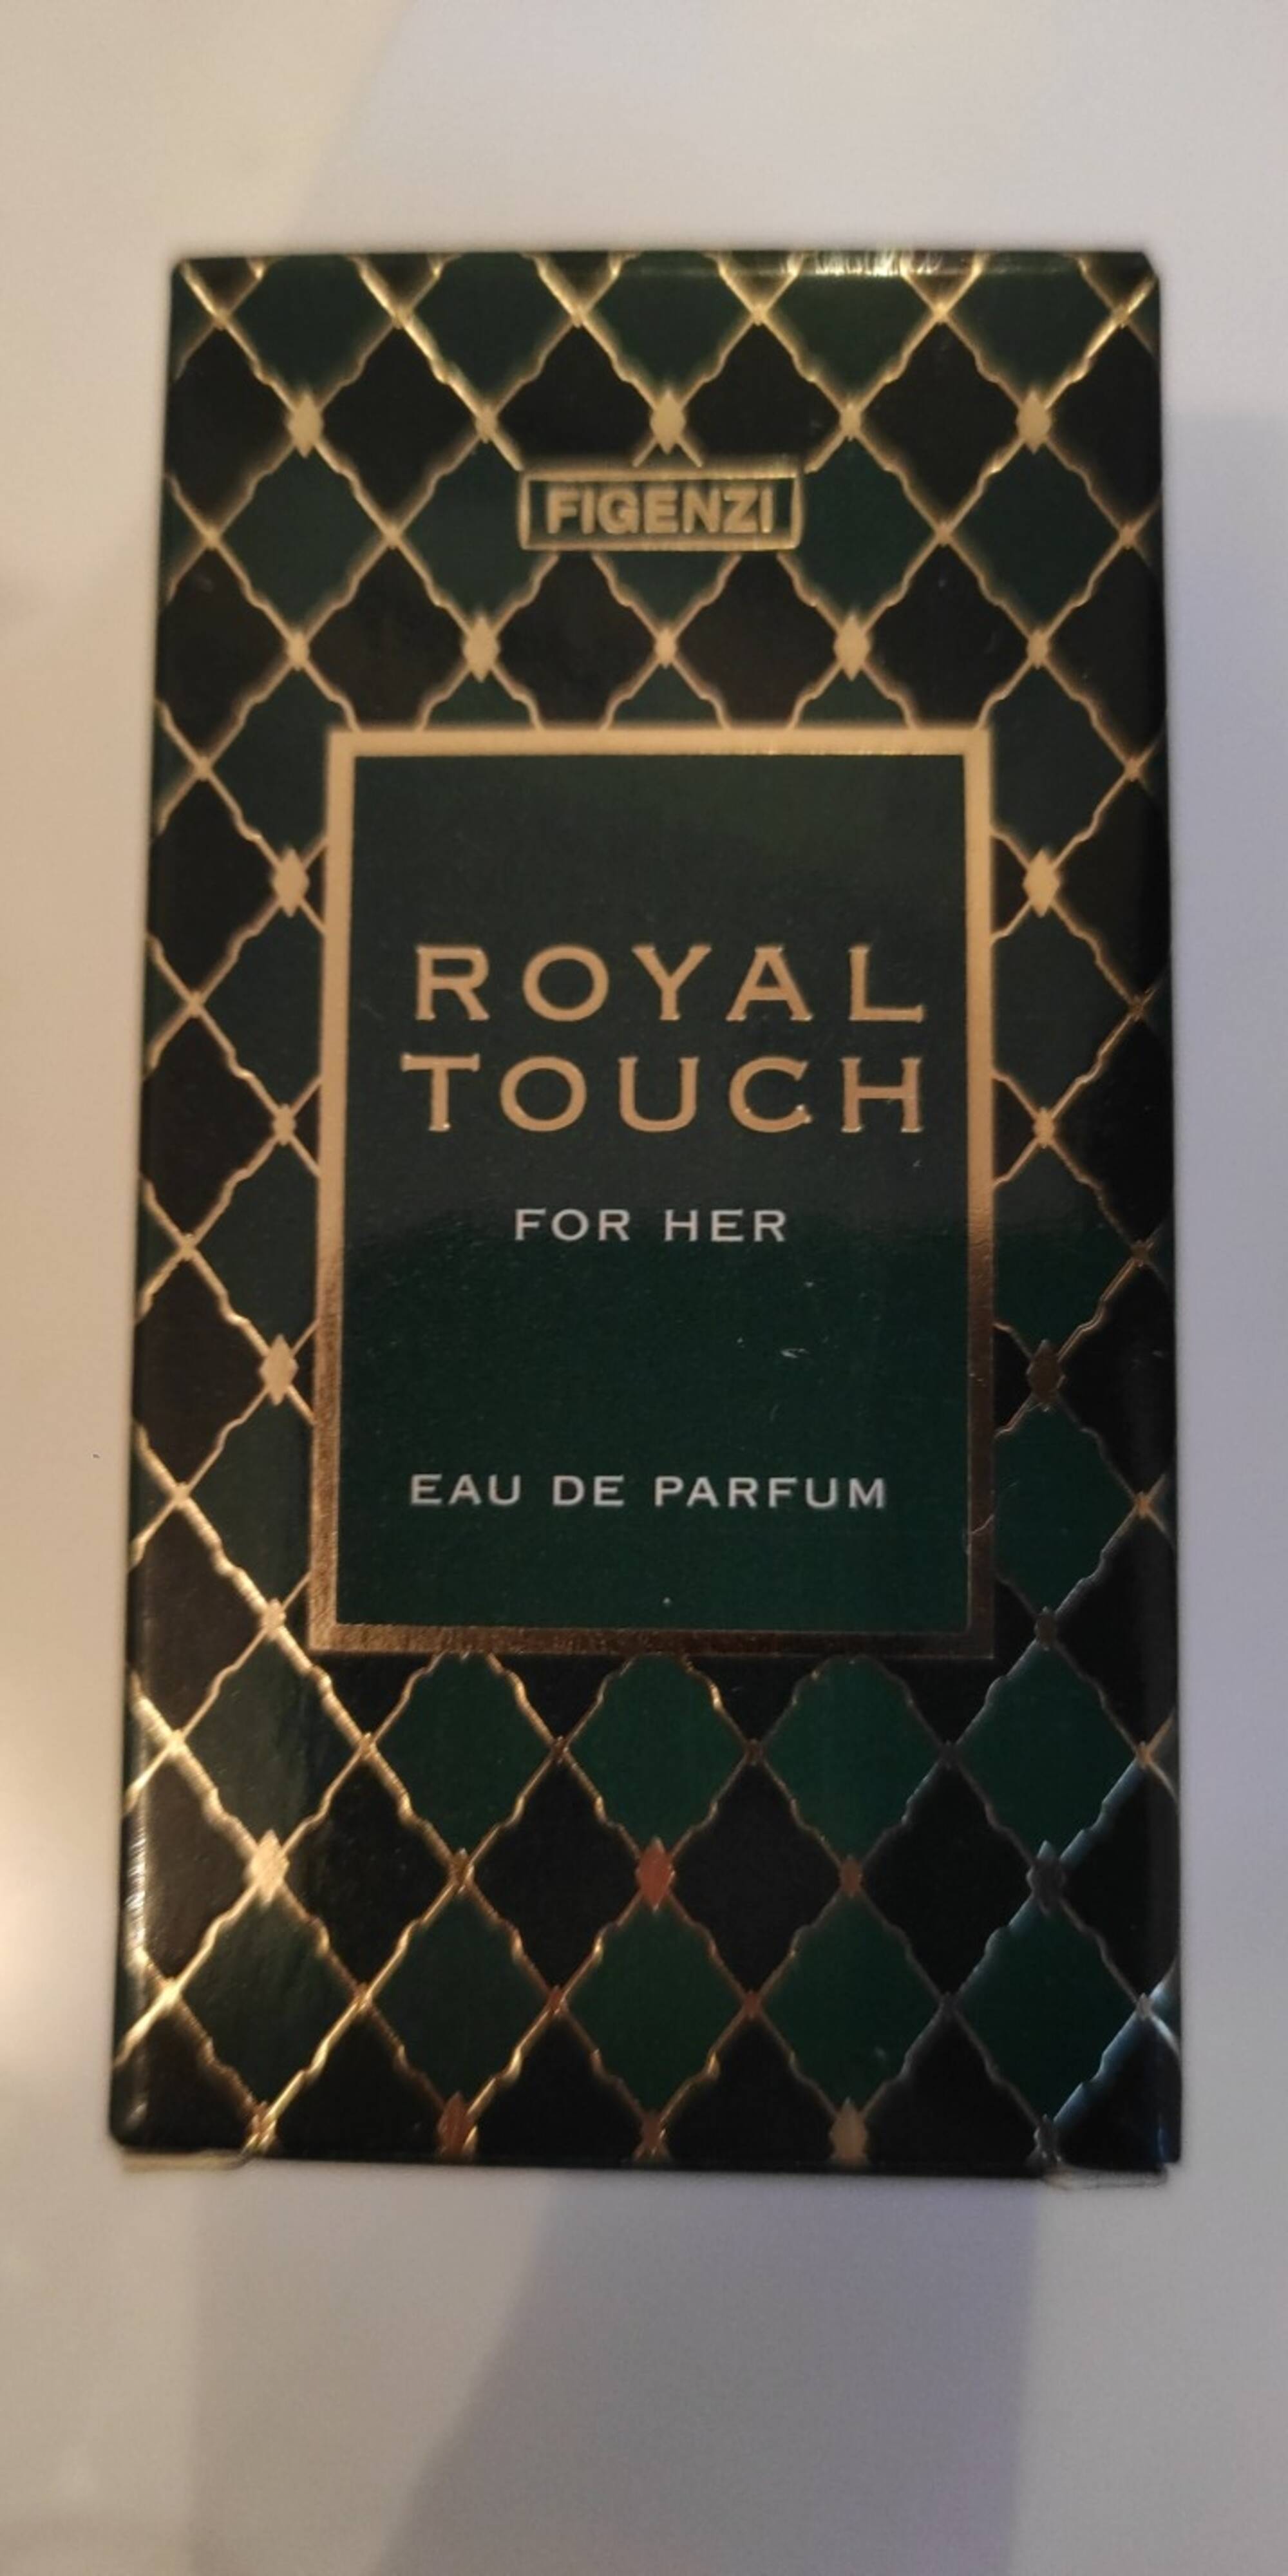 FIGENZI - Royal touch - Eau de parfum for her